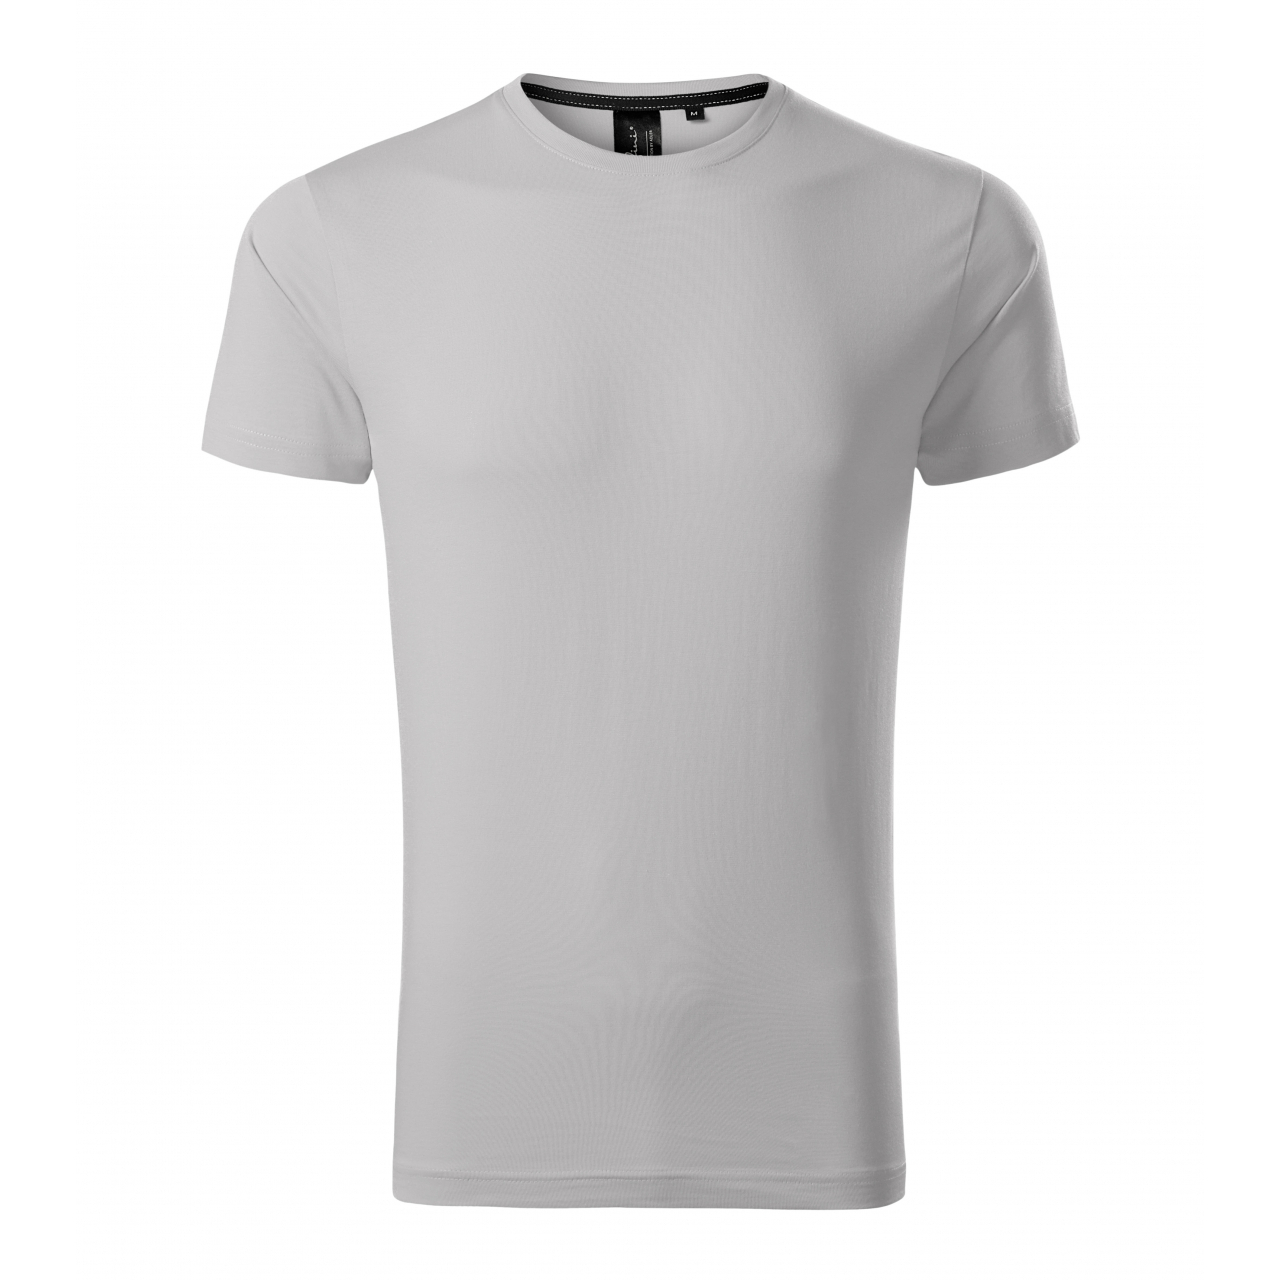 Tričko pánské Malfini Exclusive - světle šedé, XL